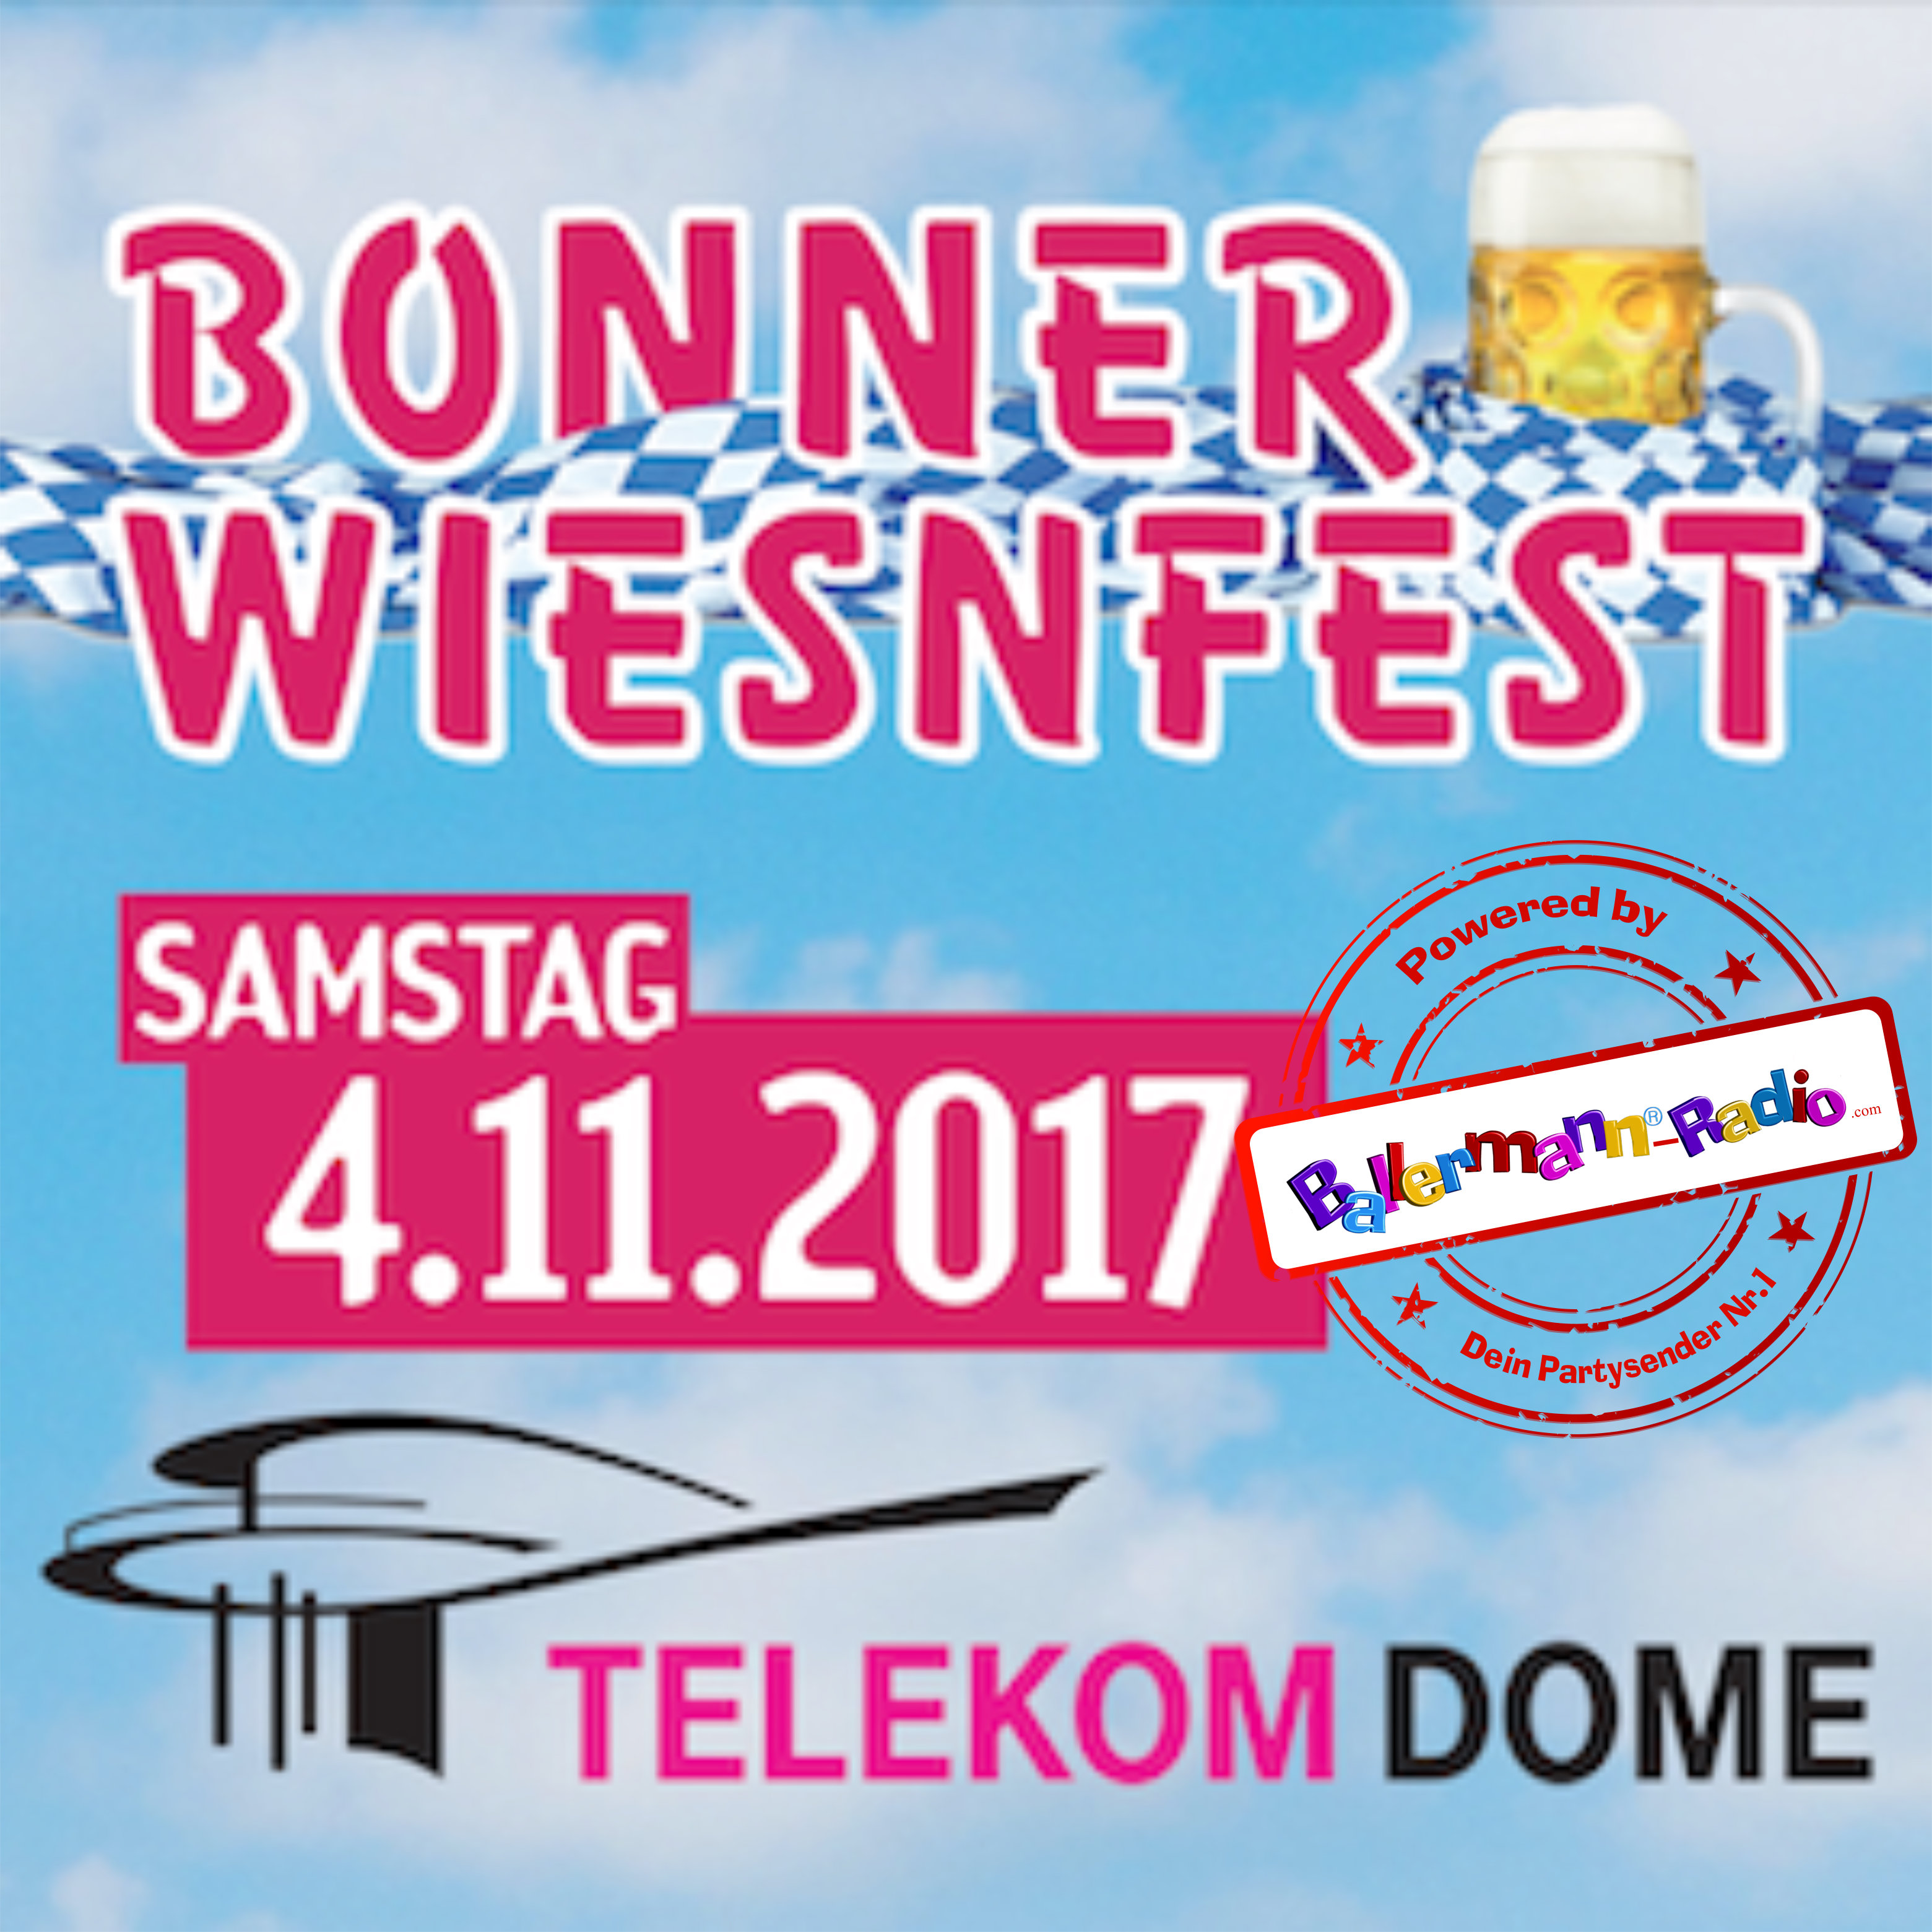 04.11.2017 Bonner Wiesnfest